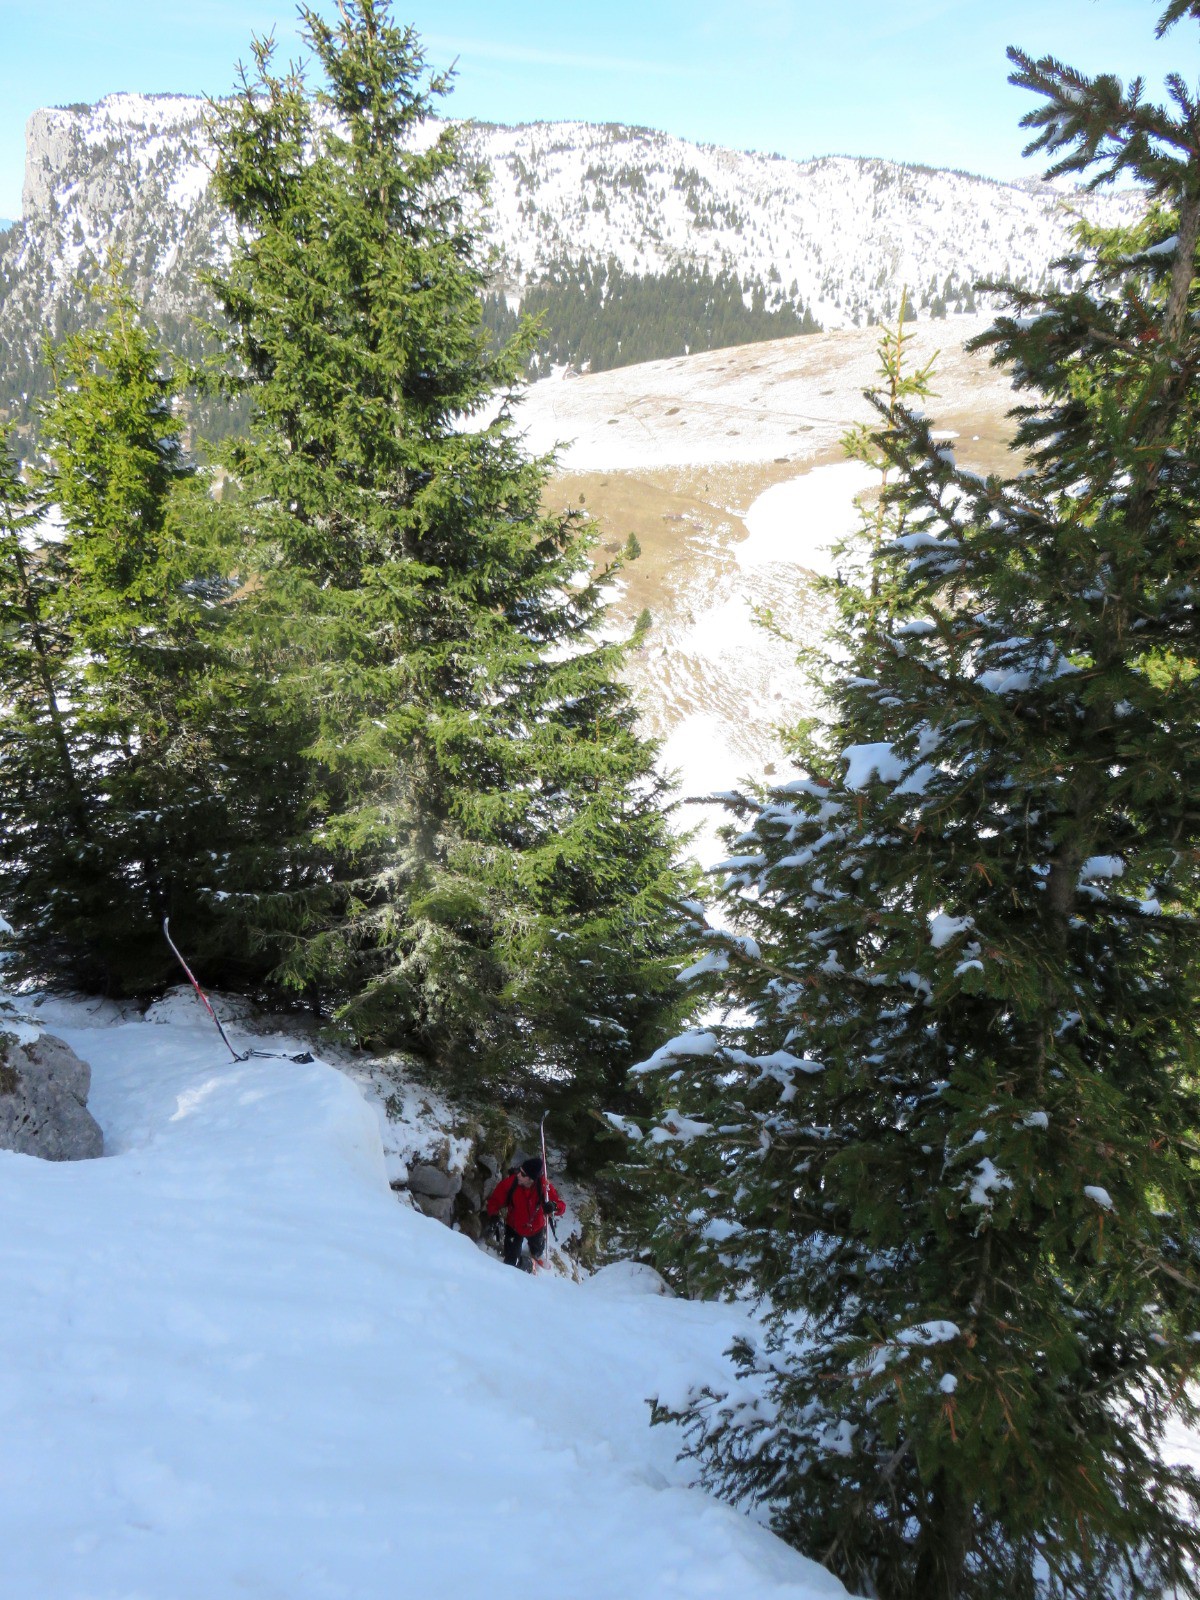 après le ski, séance d'accrobranche pour Pierre-Yves qui à lâché un ski dans le passage de la chèvre. 